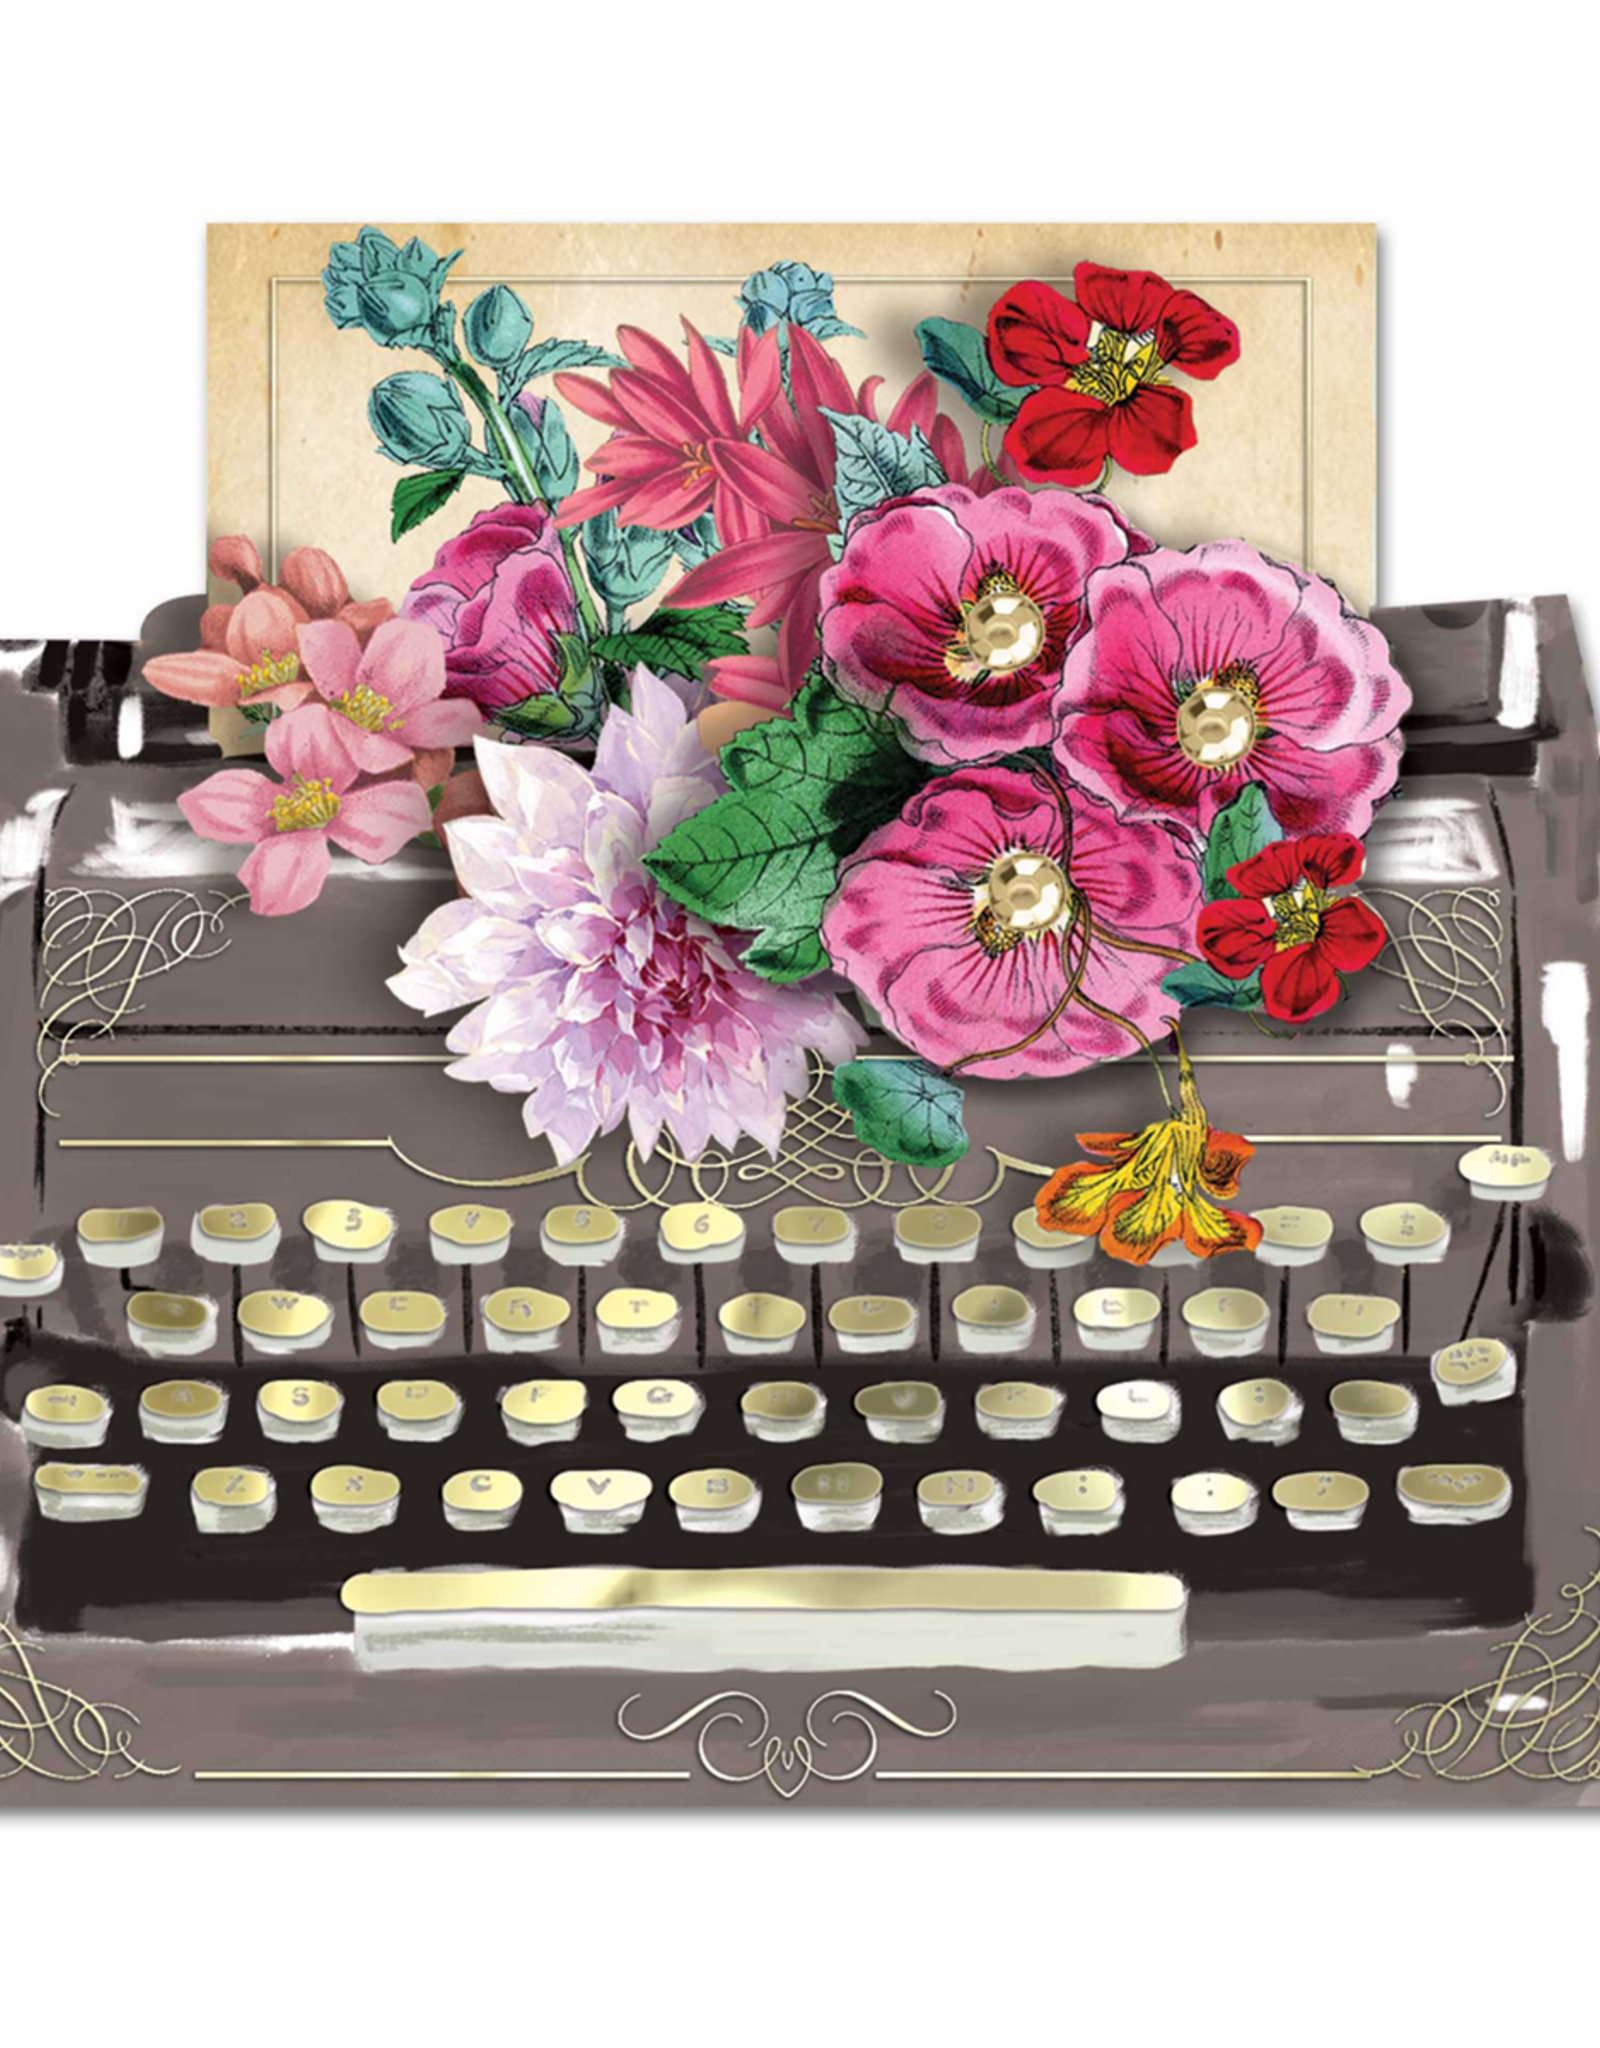 Typewriter 5 x 3.5 Greeting Card